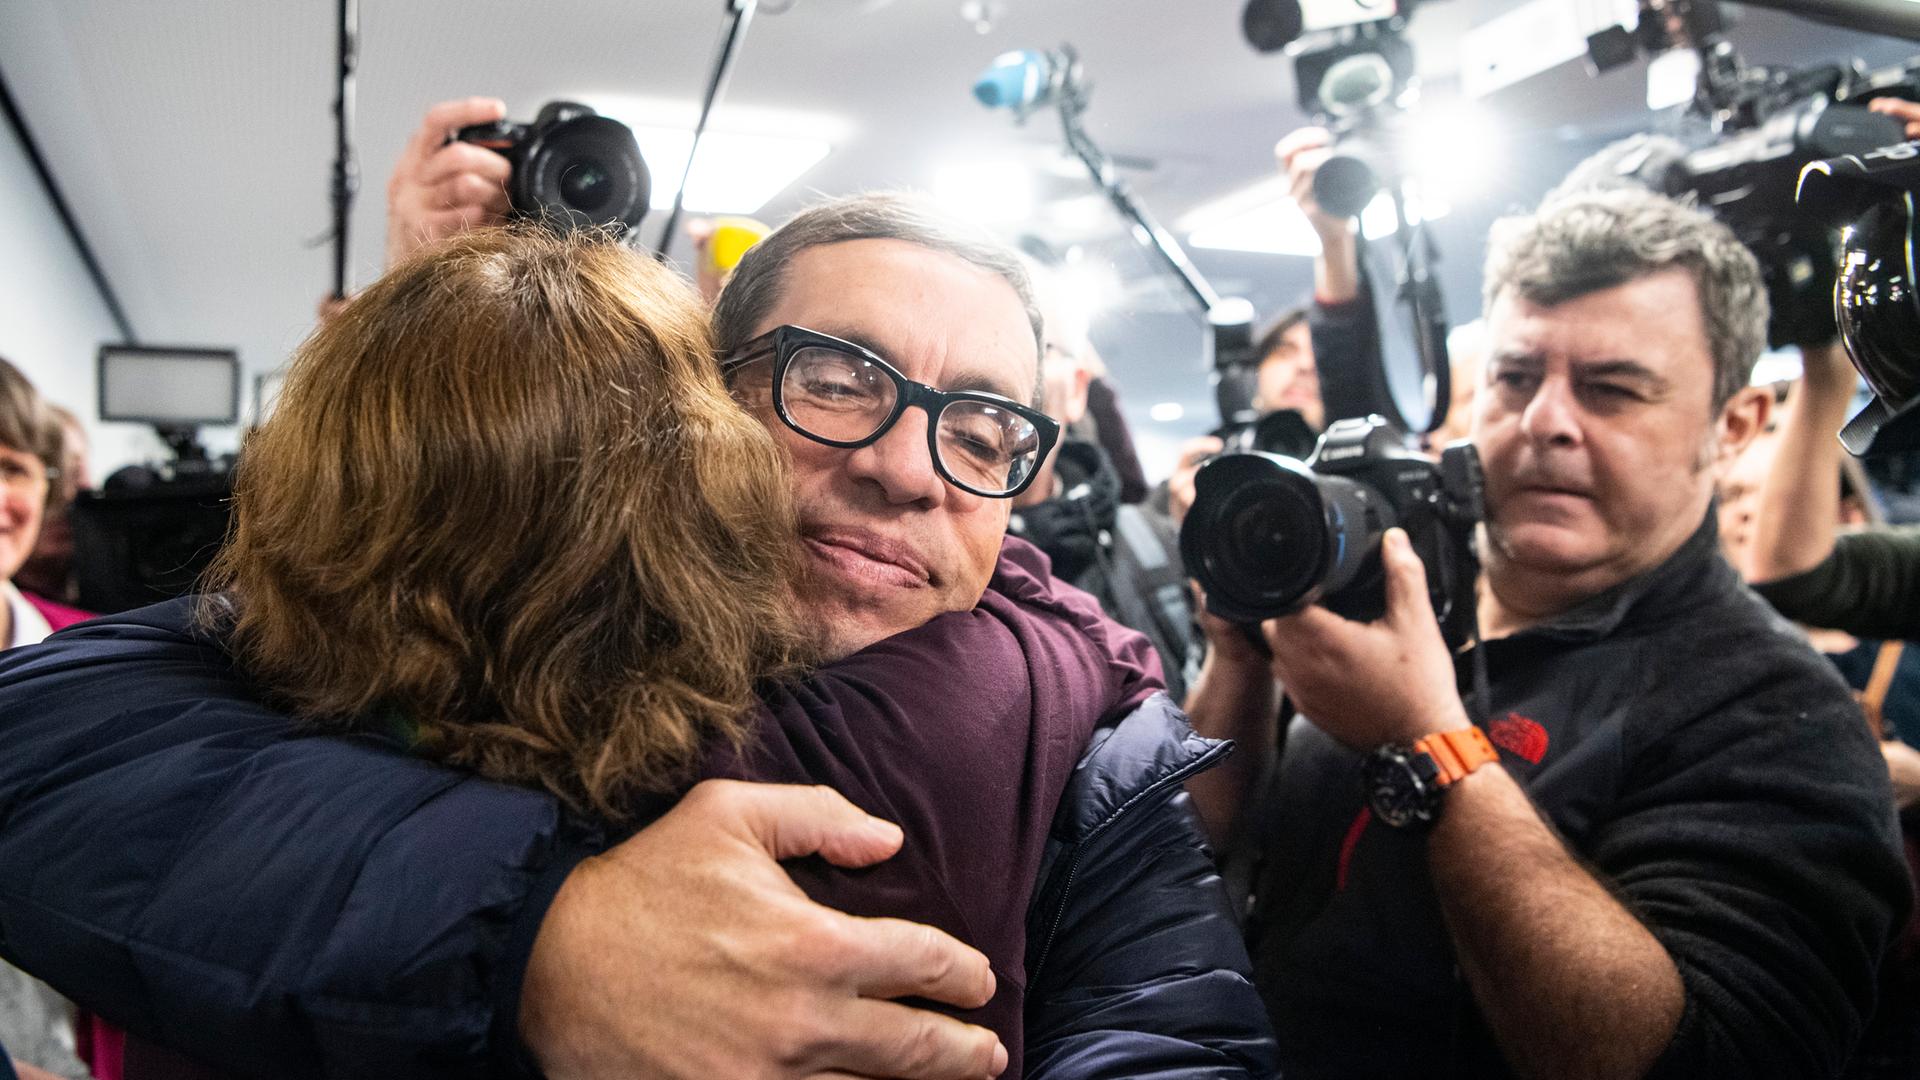 Jens Söring wird nach seiner Ankunft am Flughafen von einer Unterstützerin umarmt. Nach mehr als drei Jahrzehnten in Haft trifft der Diplomatensohn Jens Söring 2019 am Flughafen ein. 